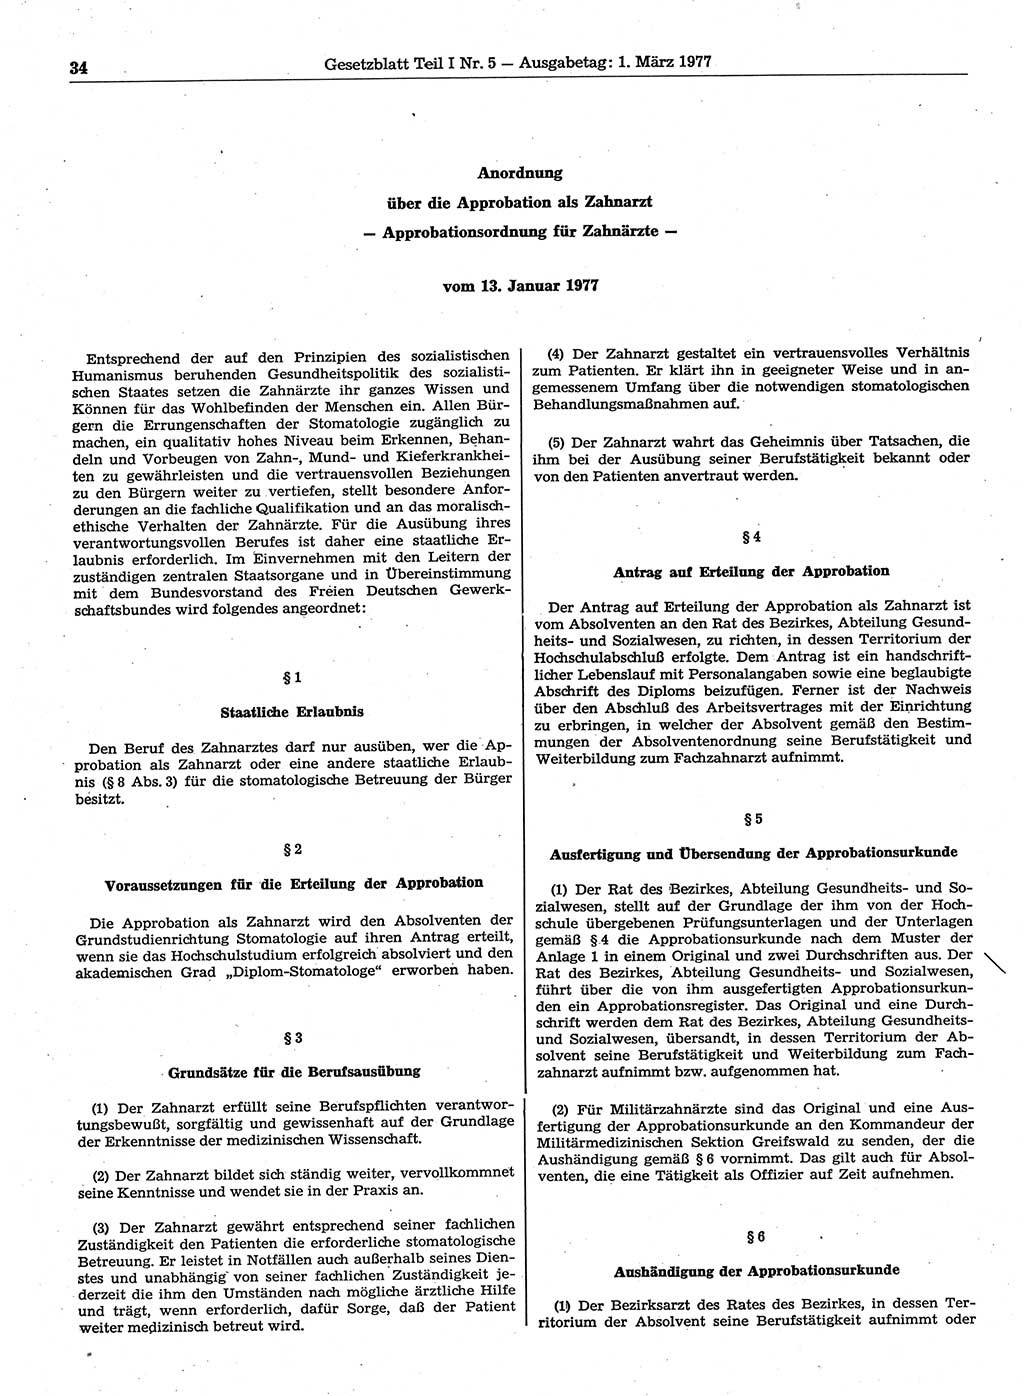 Gesetzblatt (GBl.) der Deutschen Demokratischen Republik (DDR) Teil Ⅰ 1977, Seite 34 (GBl. DDR Ⅰ 1977, S. 34)